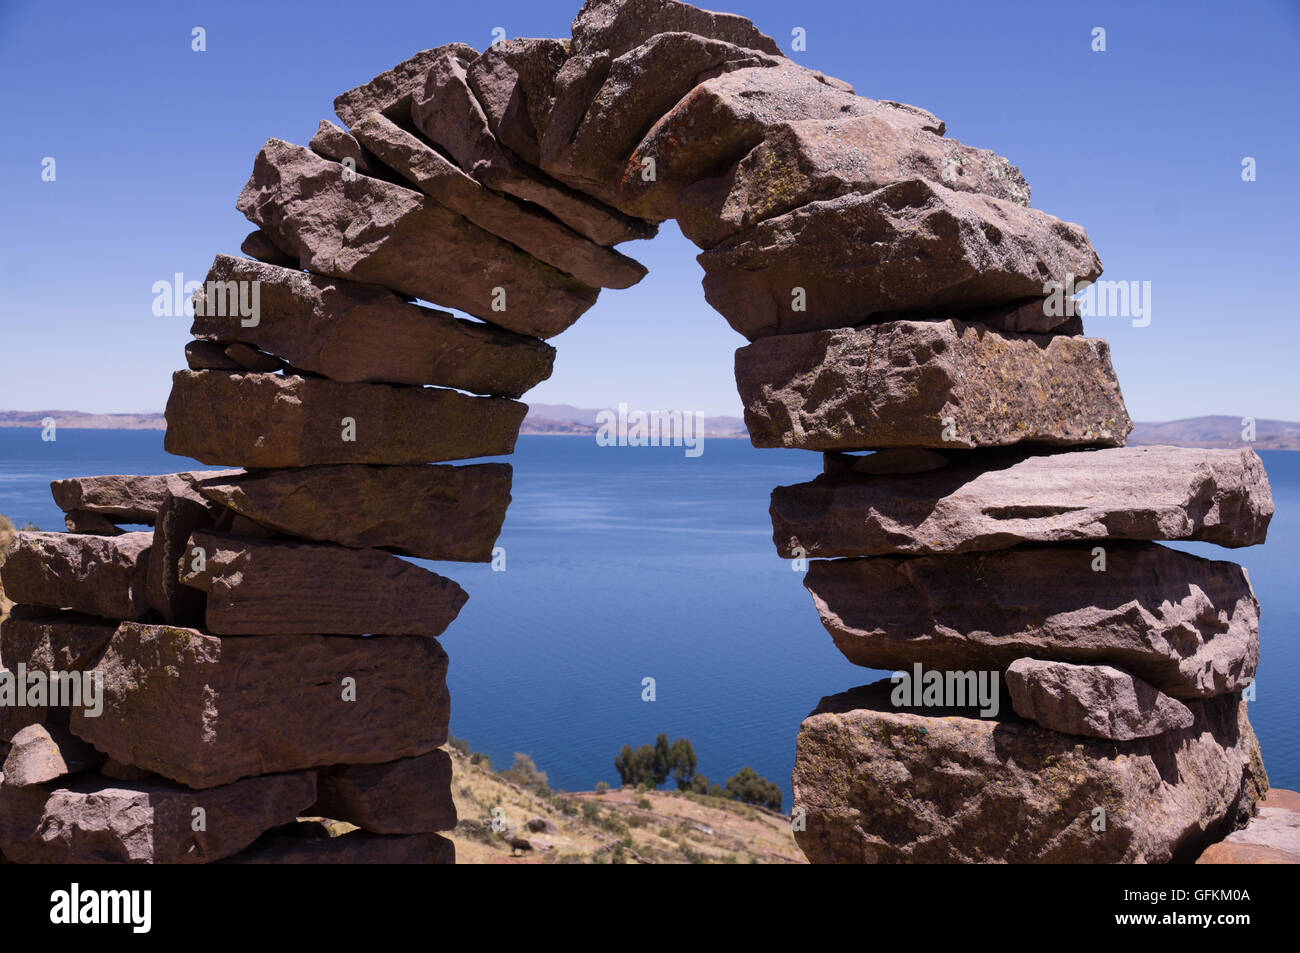 Taquile Island, Perù: Storico arco in pietra con vista sul lago Titicaca Foto Stock